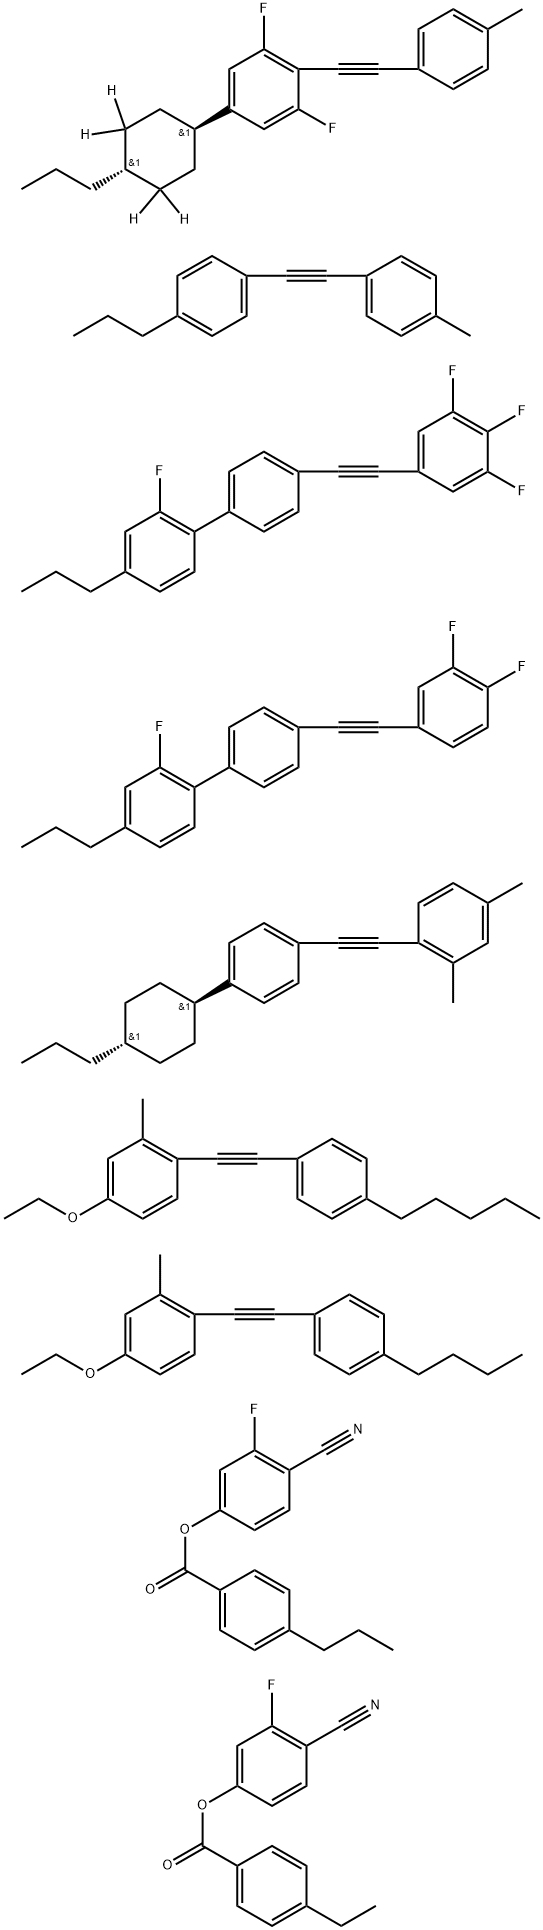 Benzoic acid, 4-ethyl-, 4-cyano-3-fluorophenyl ester, mixt. with 1-[(4-butylphenyl)ethynyl]-4-ethoxy-2-methylbenzene, 4-cyano-3-fluorophenyl 4-propylbenzoate, 1,3-difluoro-2-[(4-methylphenyl)ethynyl]-5-(trans-4-propylcyclohexyl-3,3,5,5-d4)benzene, 4′-[(3,4-difluorophenyl)ethynyl]-2-fluoro-4-propyl-1,1′-biphenyl, 2,4-dimethyl-1-[[4-(trans-4-propylcyclohexyl)phenyl]ethynyl]benzene, 4-ethoxy-2-methyl-1-[(4-pentylphenyl)ethynyl]benzene, 2-fluoro-4-propyl-4′-[(3,4,5-trifluorophenyl)ethynyl]-1,1′-biphenyl and 1-[(4-methylphenyl)ethynyl]-4-propylbenzene 구조식 이미지